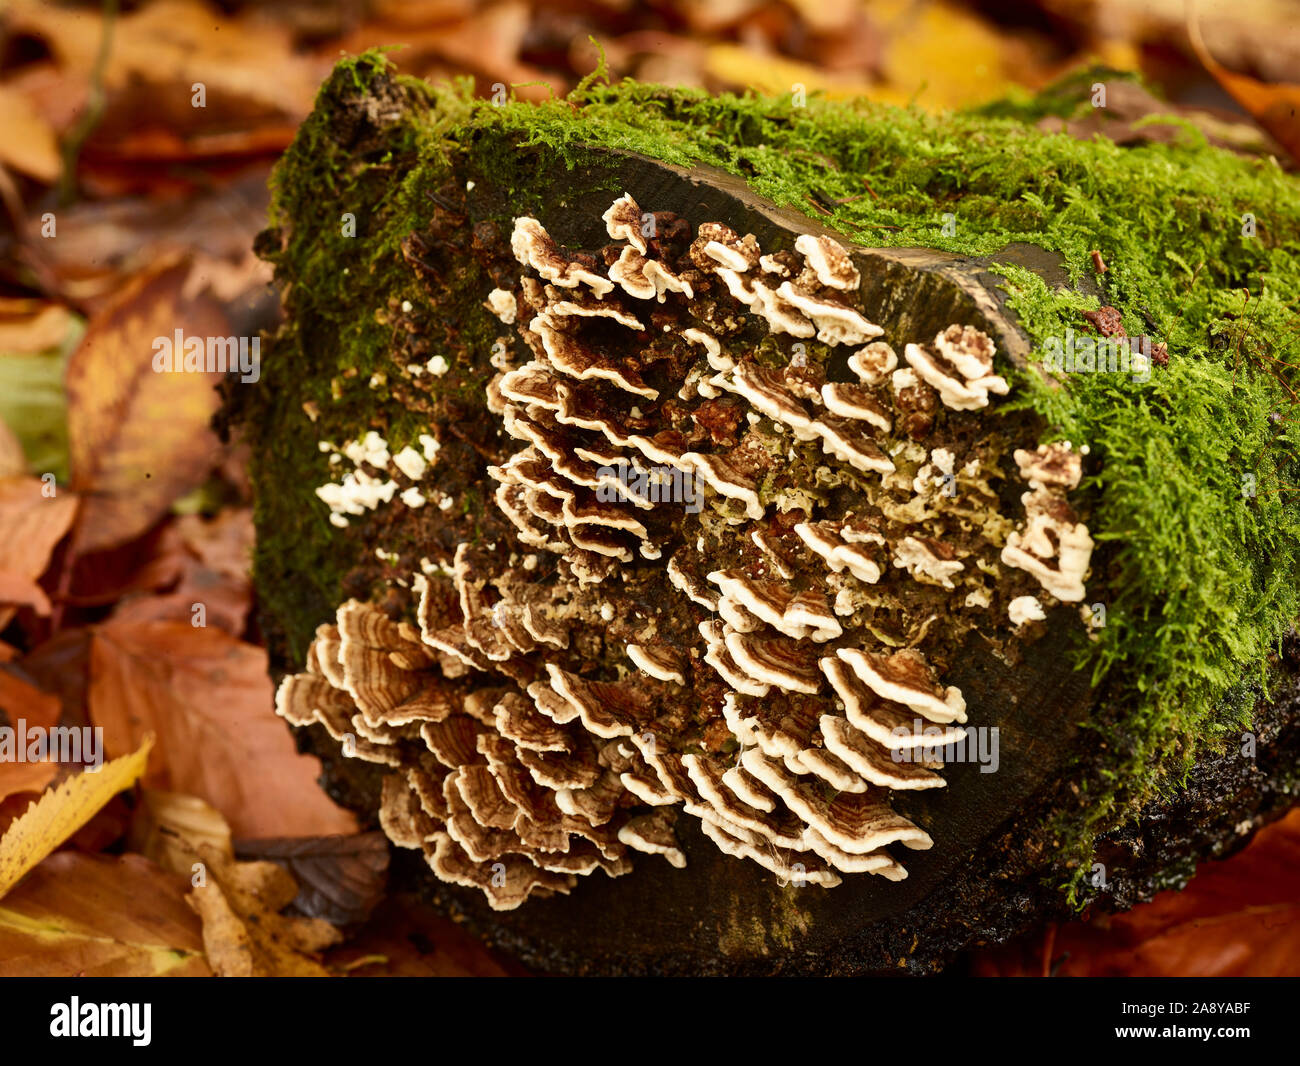 Intimo astratto naturale di funghi staffa e muschio che crescono sulla cima di un albero decadente ceppo, Kent, Inghilterra, Regno Unito, Europa Foto Stock